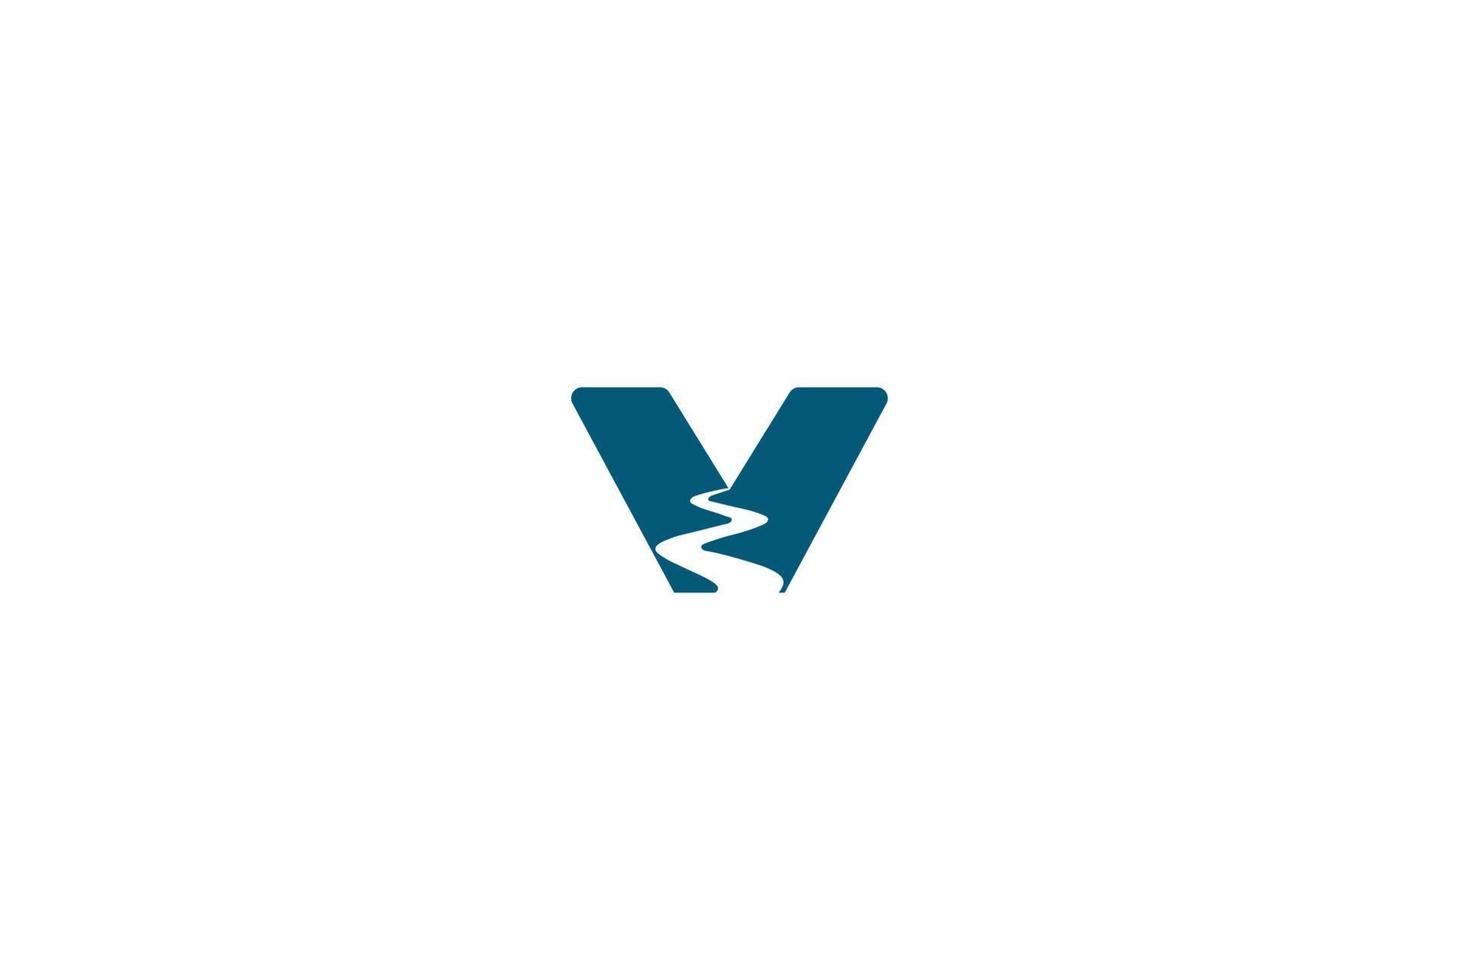 eenvoudige minimalistische beginletter v vallei kreek rivier weg logo ontwerp vector